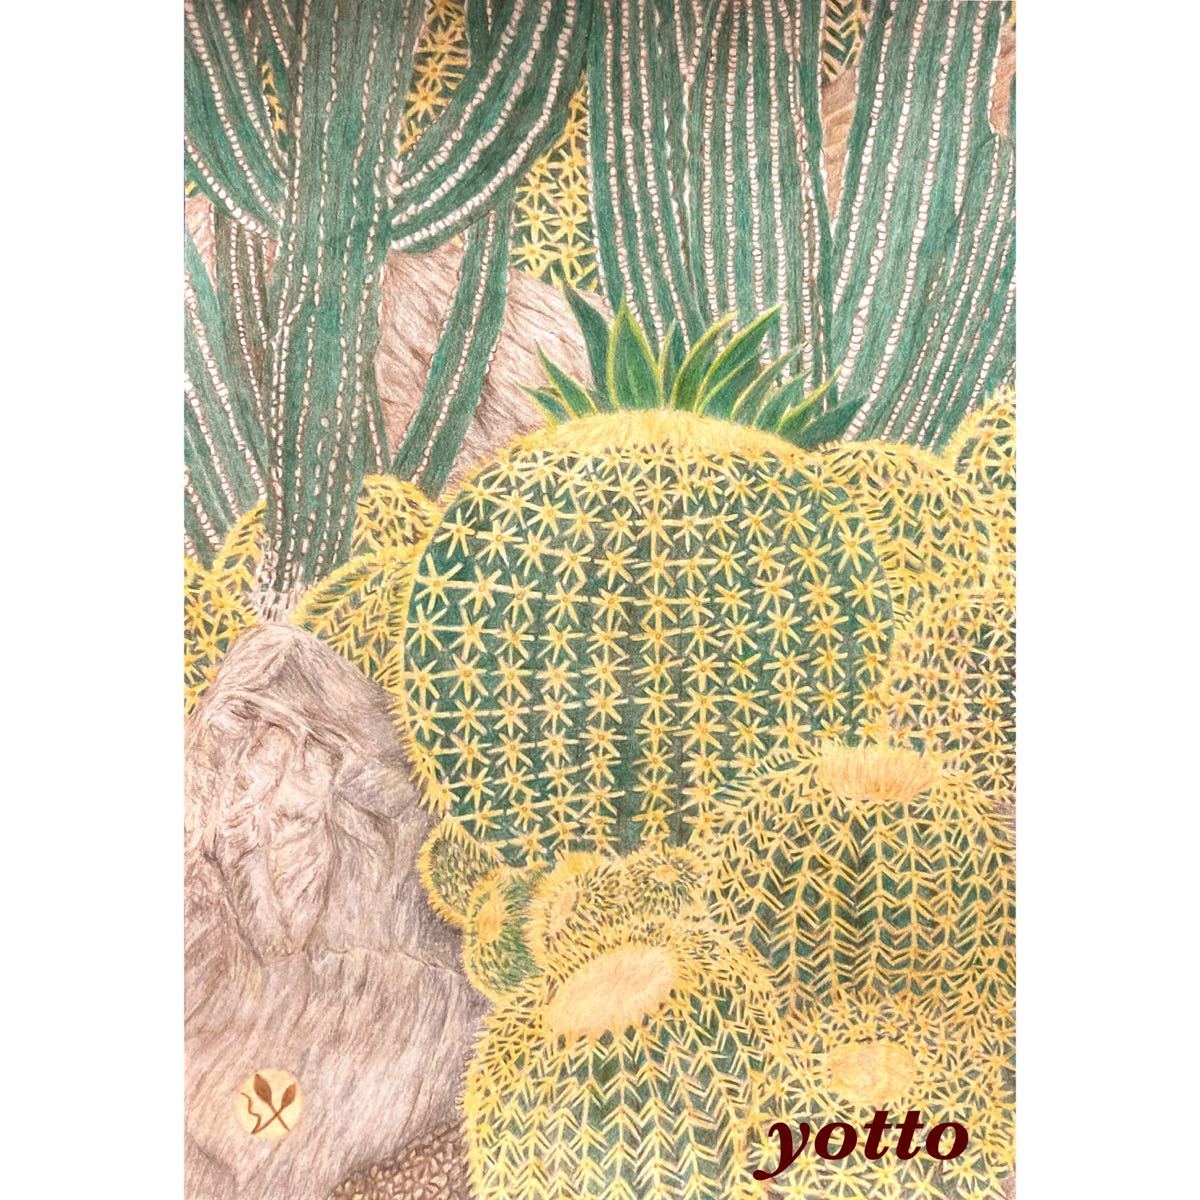 Buntstiftzeichnung Kaktus ~ Kinshachi ~ B5 mit Rahmen◇◆Handgezeichnet◇Originalbild◆Yotto◇, Kunstwerk, Malerei, Bleistiftzeichnung, Kohlezeichnung